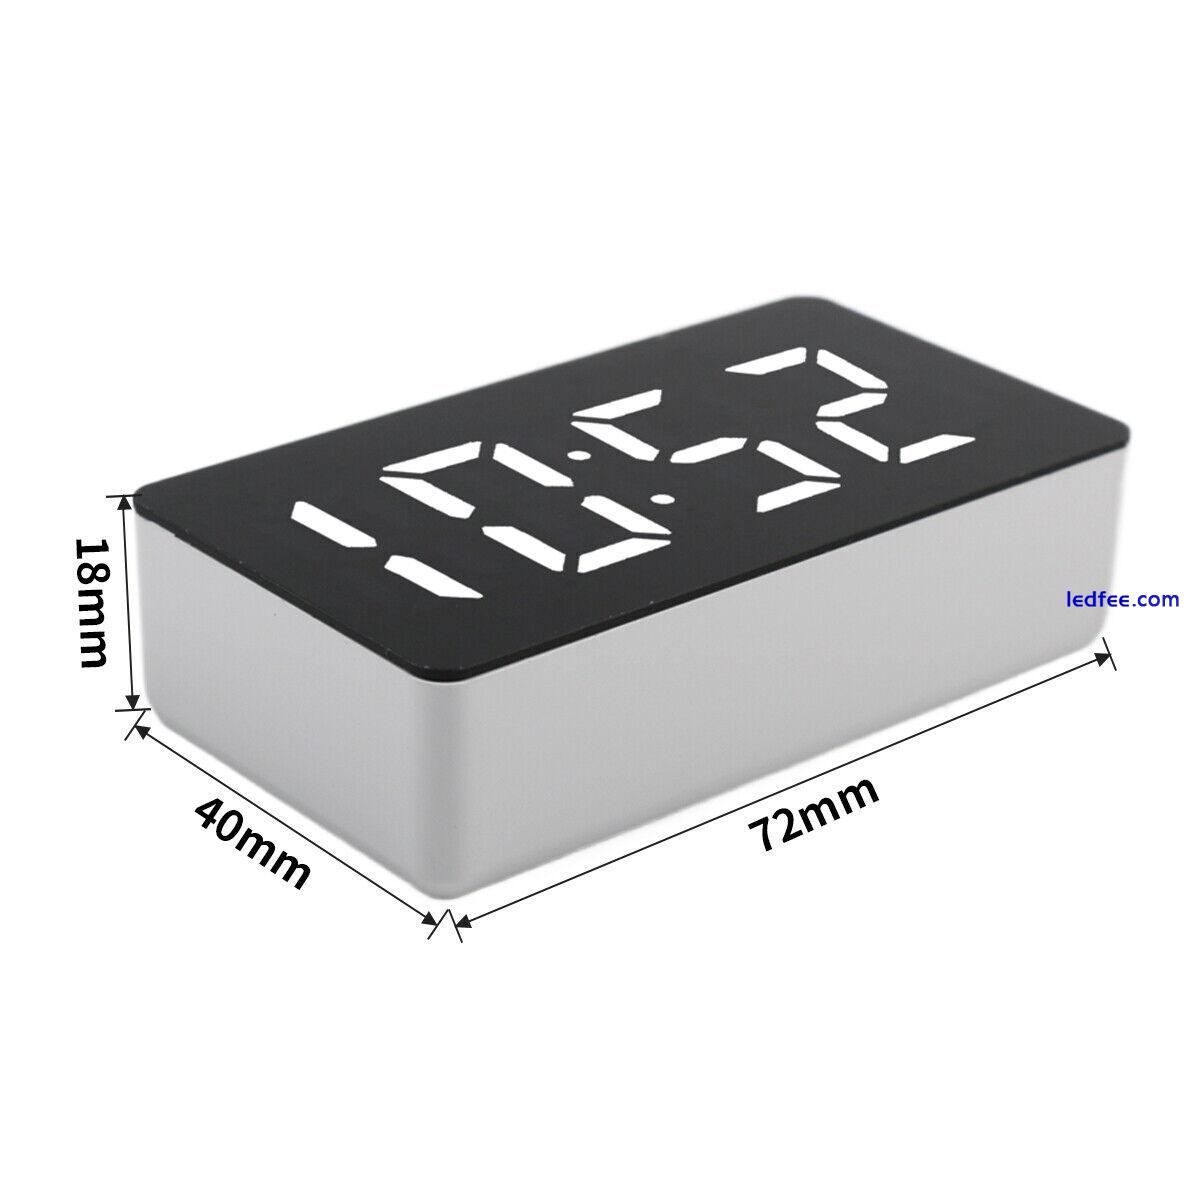 LED Electric Digital Alarm Clock Mains Battery Mirror Temperature Display UK 1 